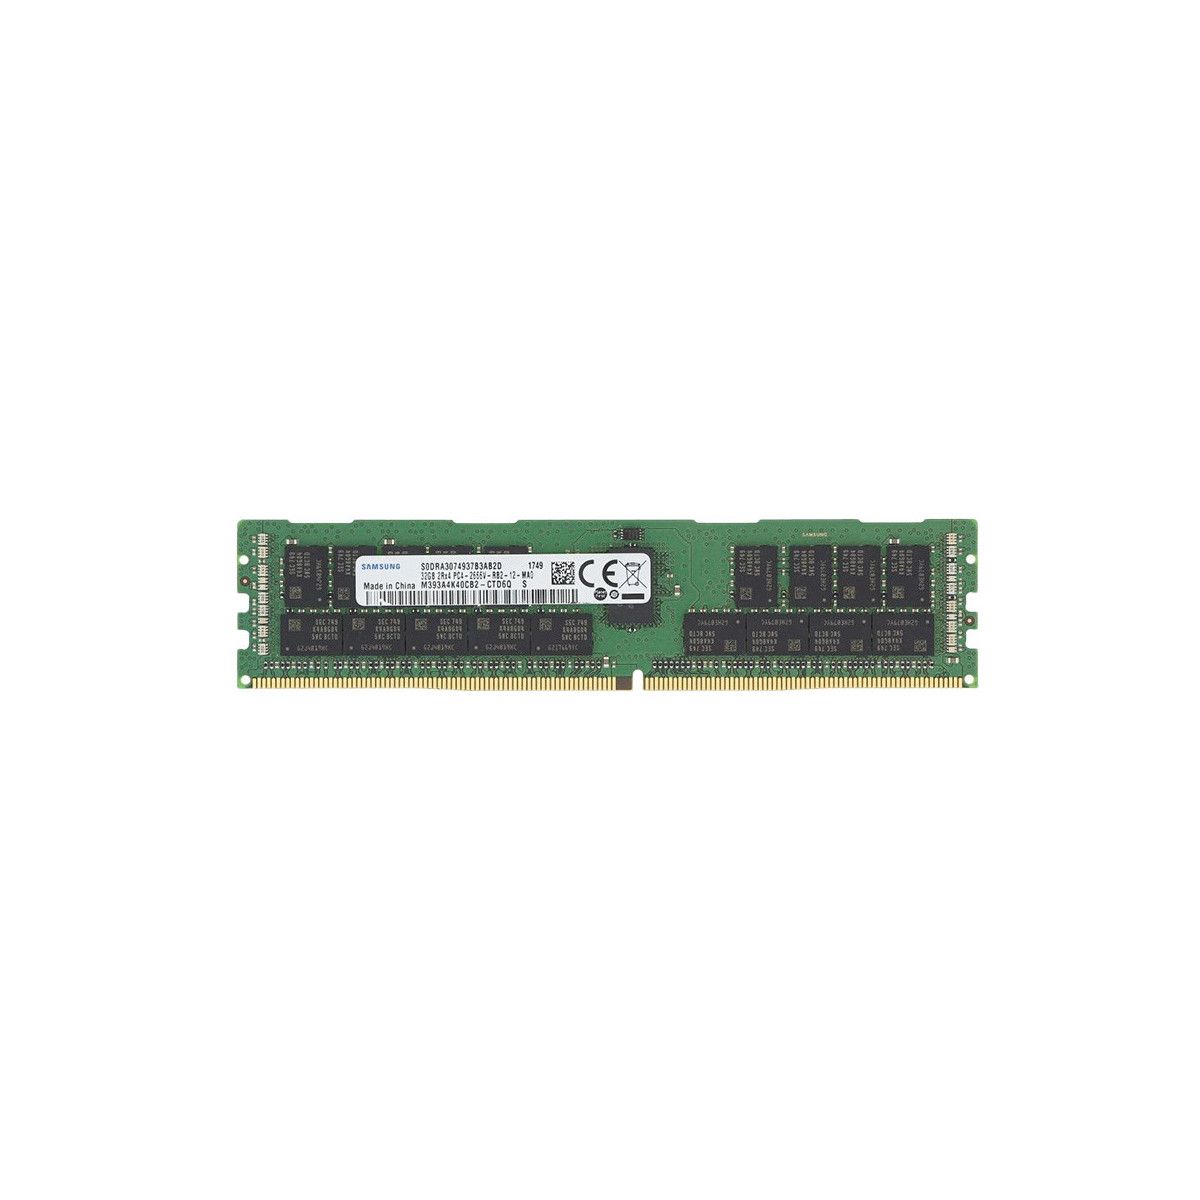 815100-K21-MS - Memstar 1x 32GB DDR4-2666 RDIMM PC4-21300V-R- Memstar Compatibel OEM geheugen 1 - Memstar 